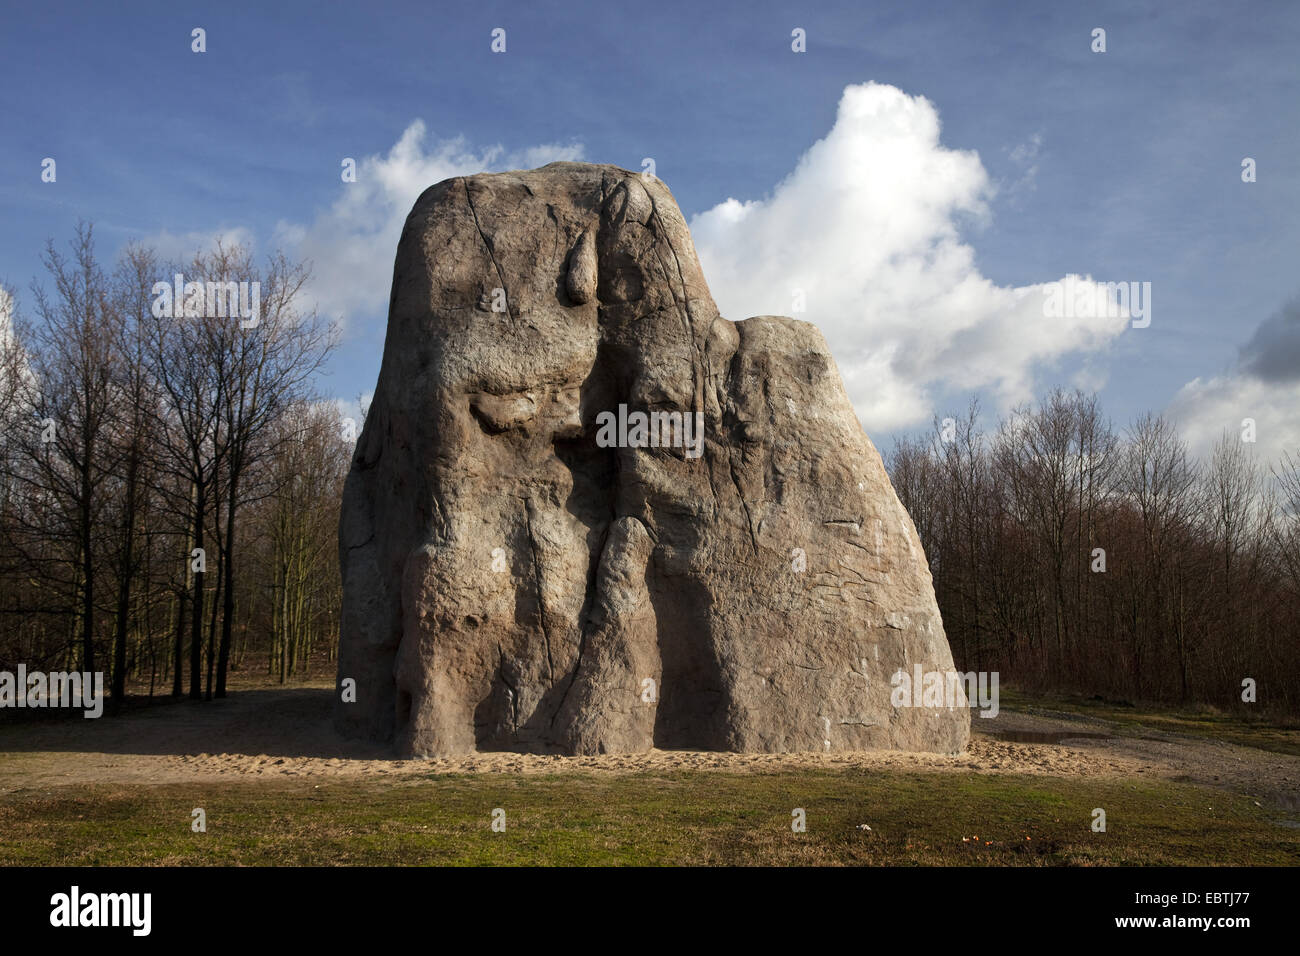 Opera d'arte 'Monument per un futuro già dimenticato' , in Germania, in Renania settentrionale-Vestfalia, la zona della Ruhr, Gelsenkirchen Foto Stock